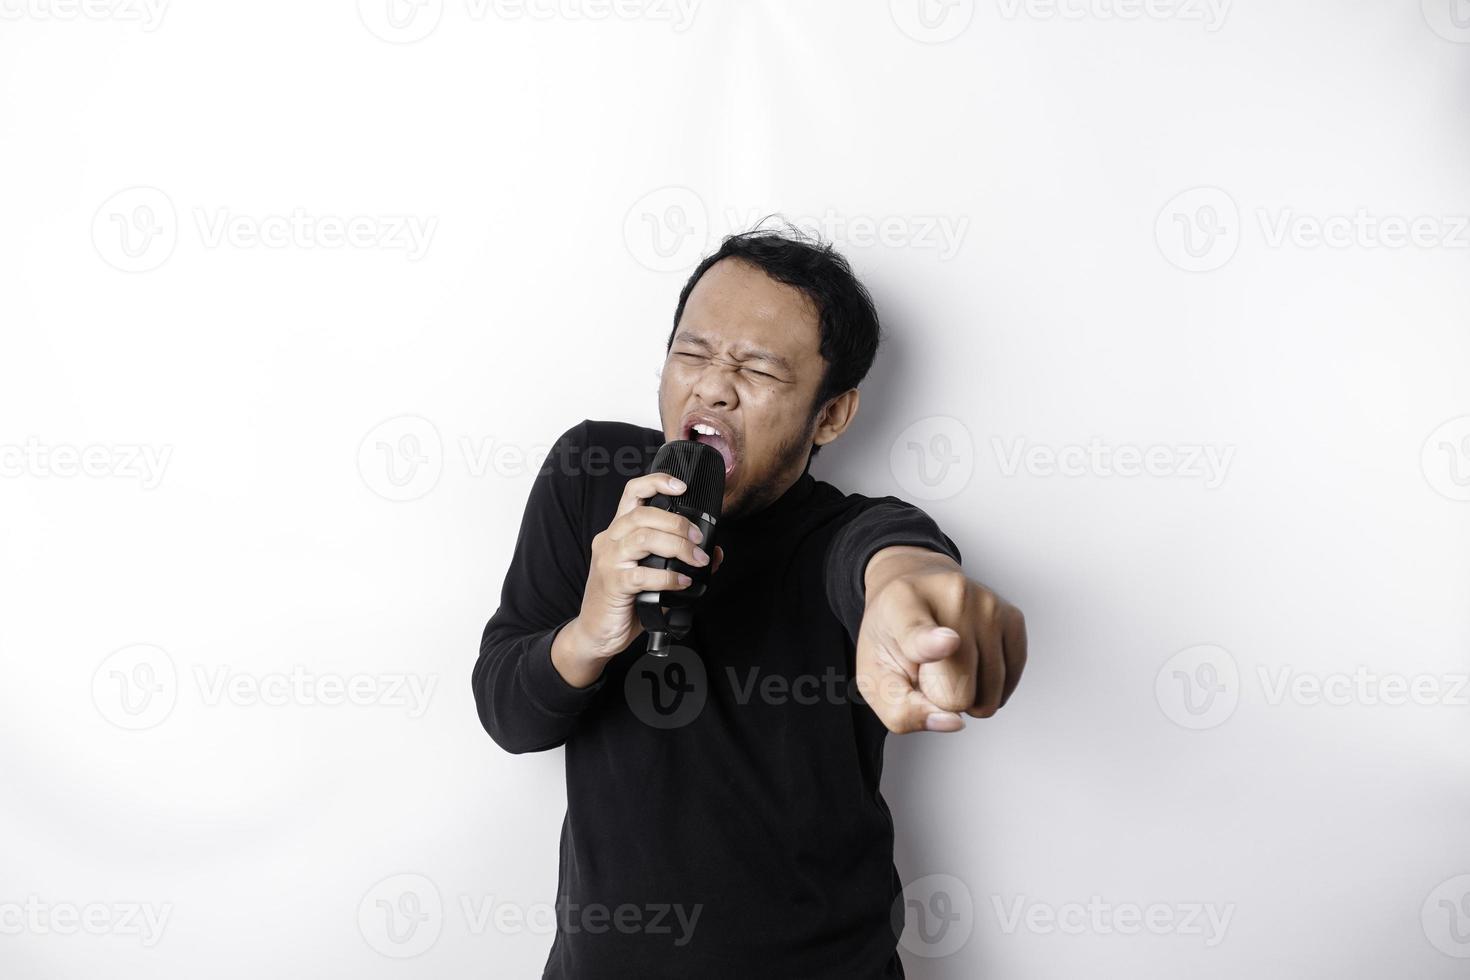 retrato de homem asiático despreocupado, se divertindo karaokê, cantando no microfone em pé sobre fundo branco foto